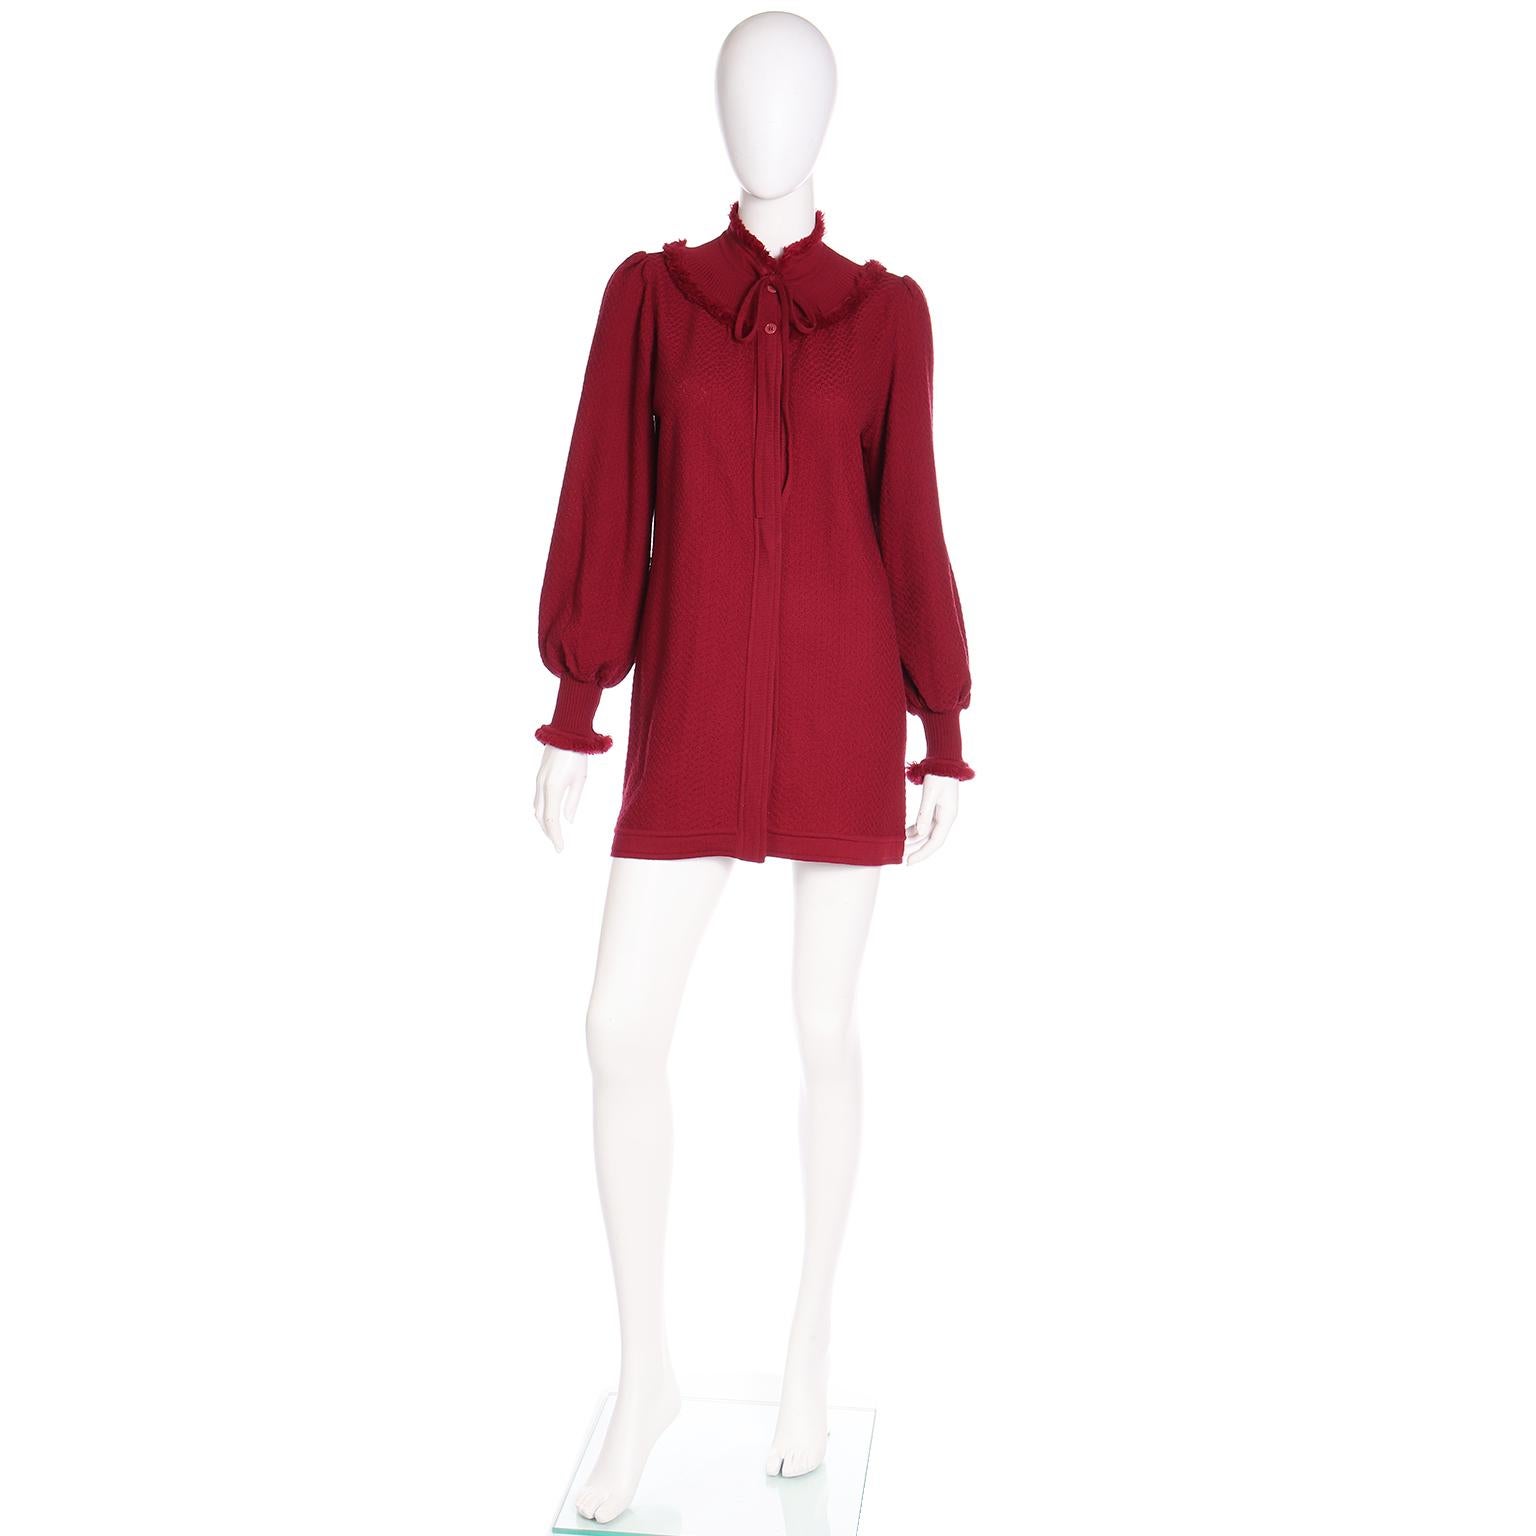 Superbe pull YSL en laine rouge bordeaux des années 1970 avec un empiècement garni de franges et des franges aux poignets. Il y a un lien à l'encolure et deux boutons en haut pour la fermeture. Les épaules sont placées de façon à pouvoir accueillir